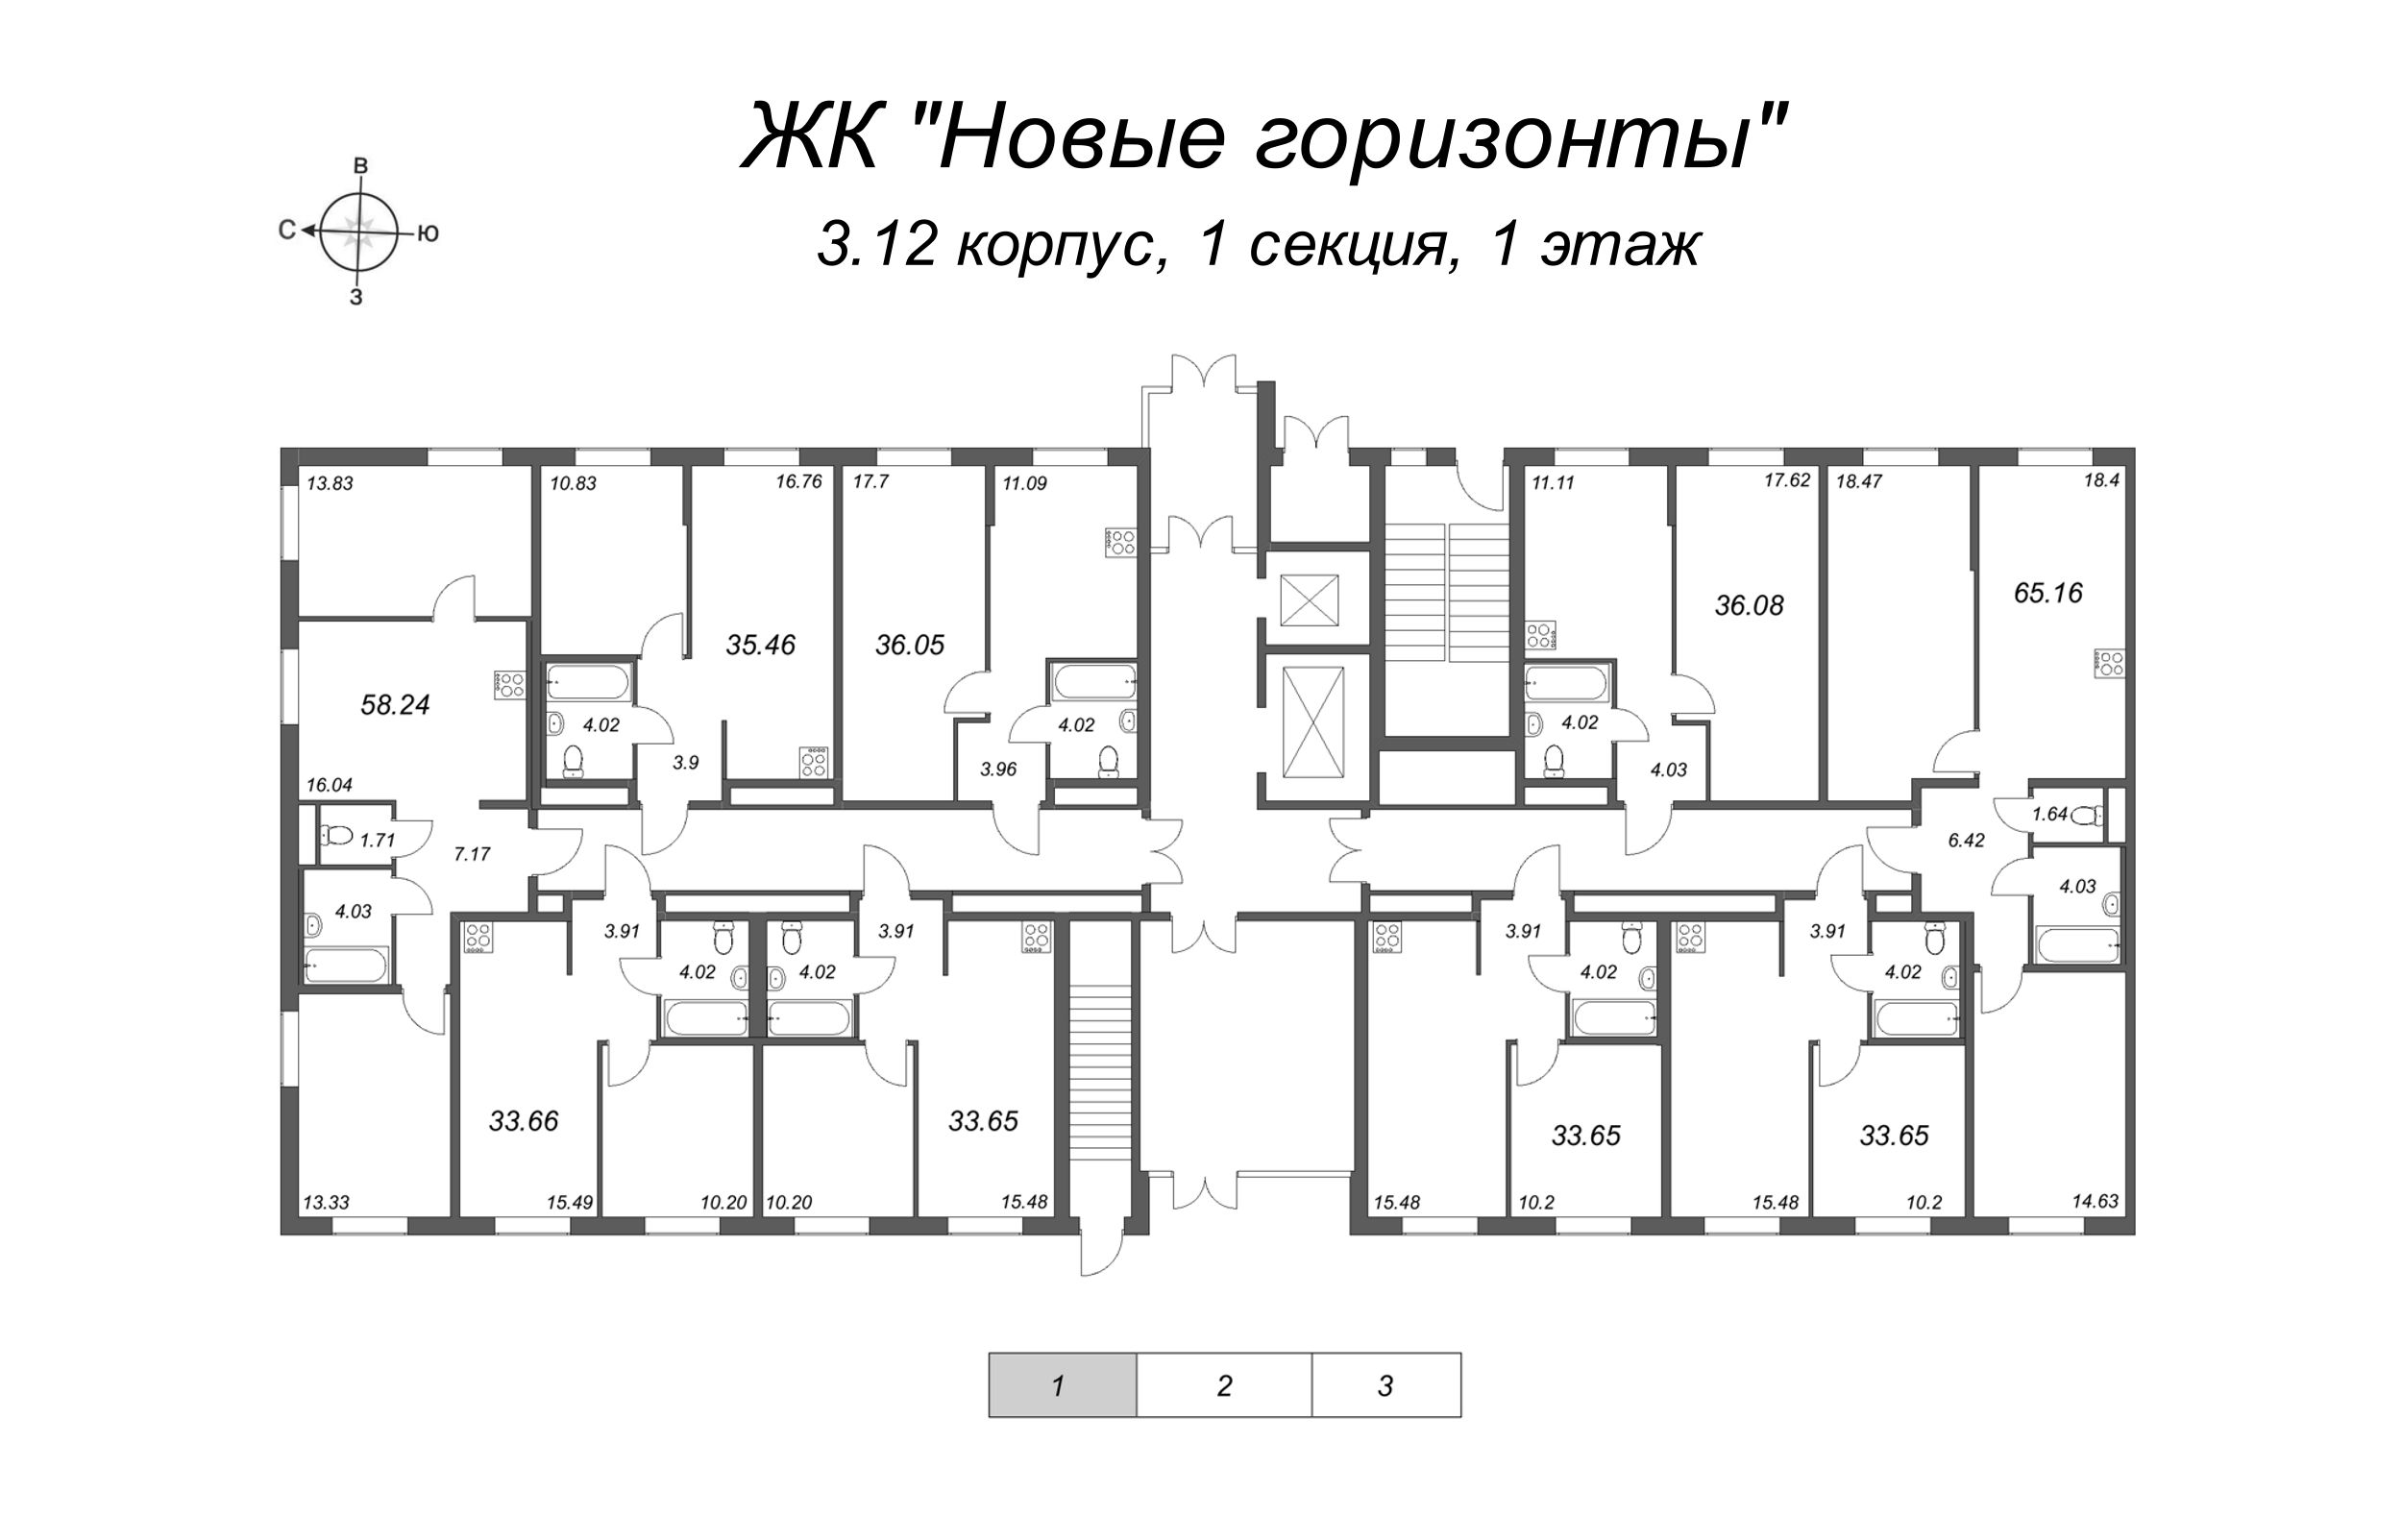 2-комнатная (Евро) квартира, 33.65 м² в ЖК "Новые горизонты" - планировка этажа